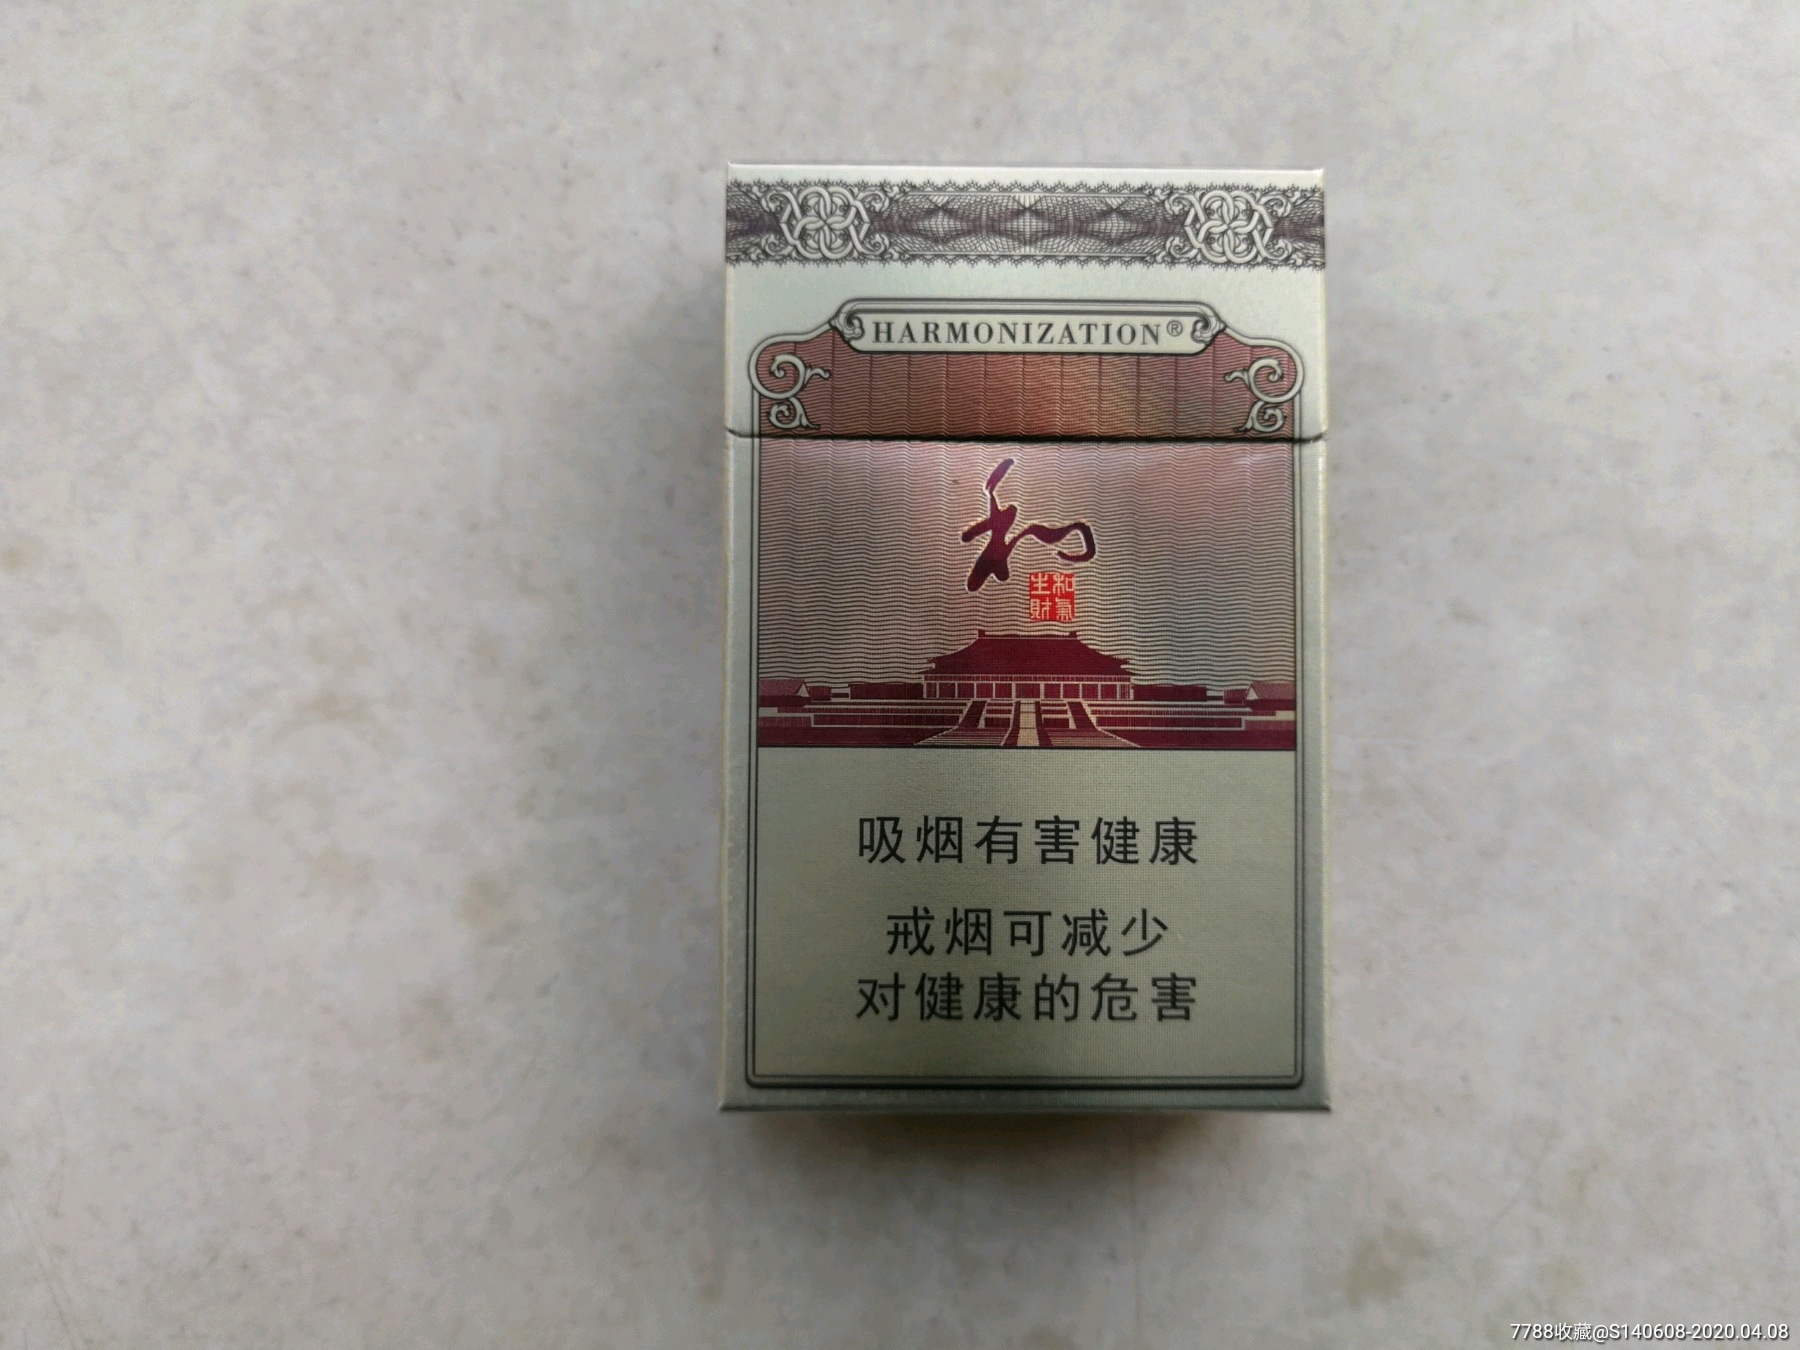 和气生财【12版】3d-价格:3元-se72195298-烟标/烟盒-零售-7788收藏